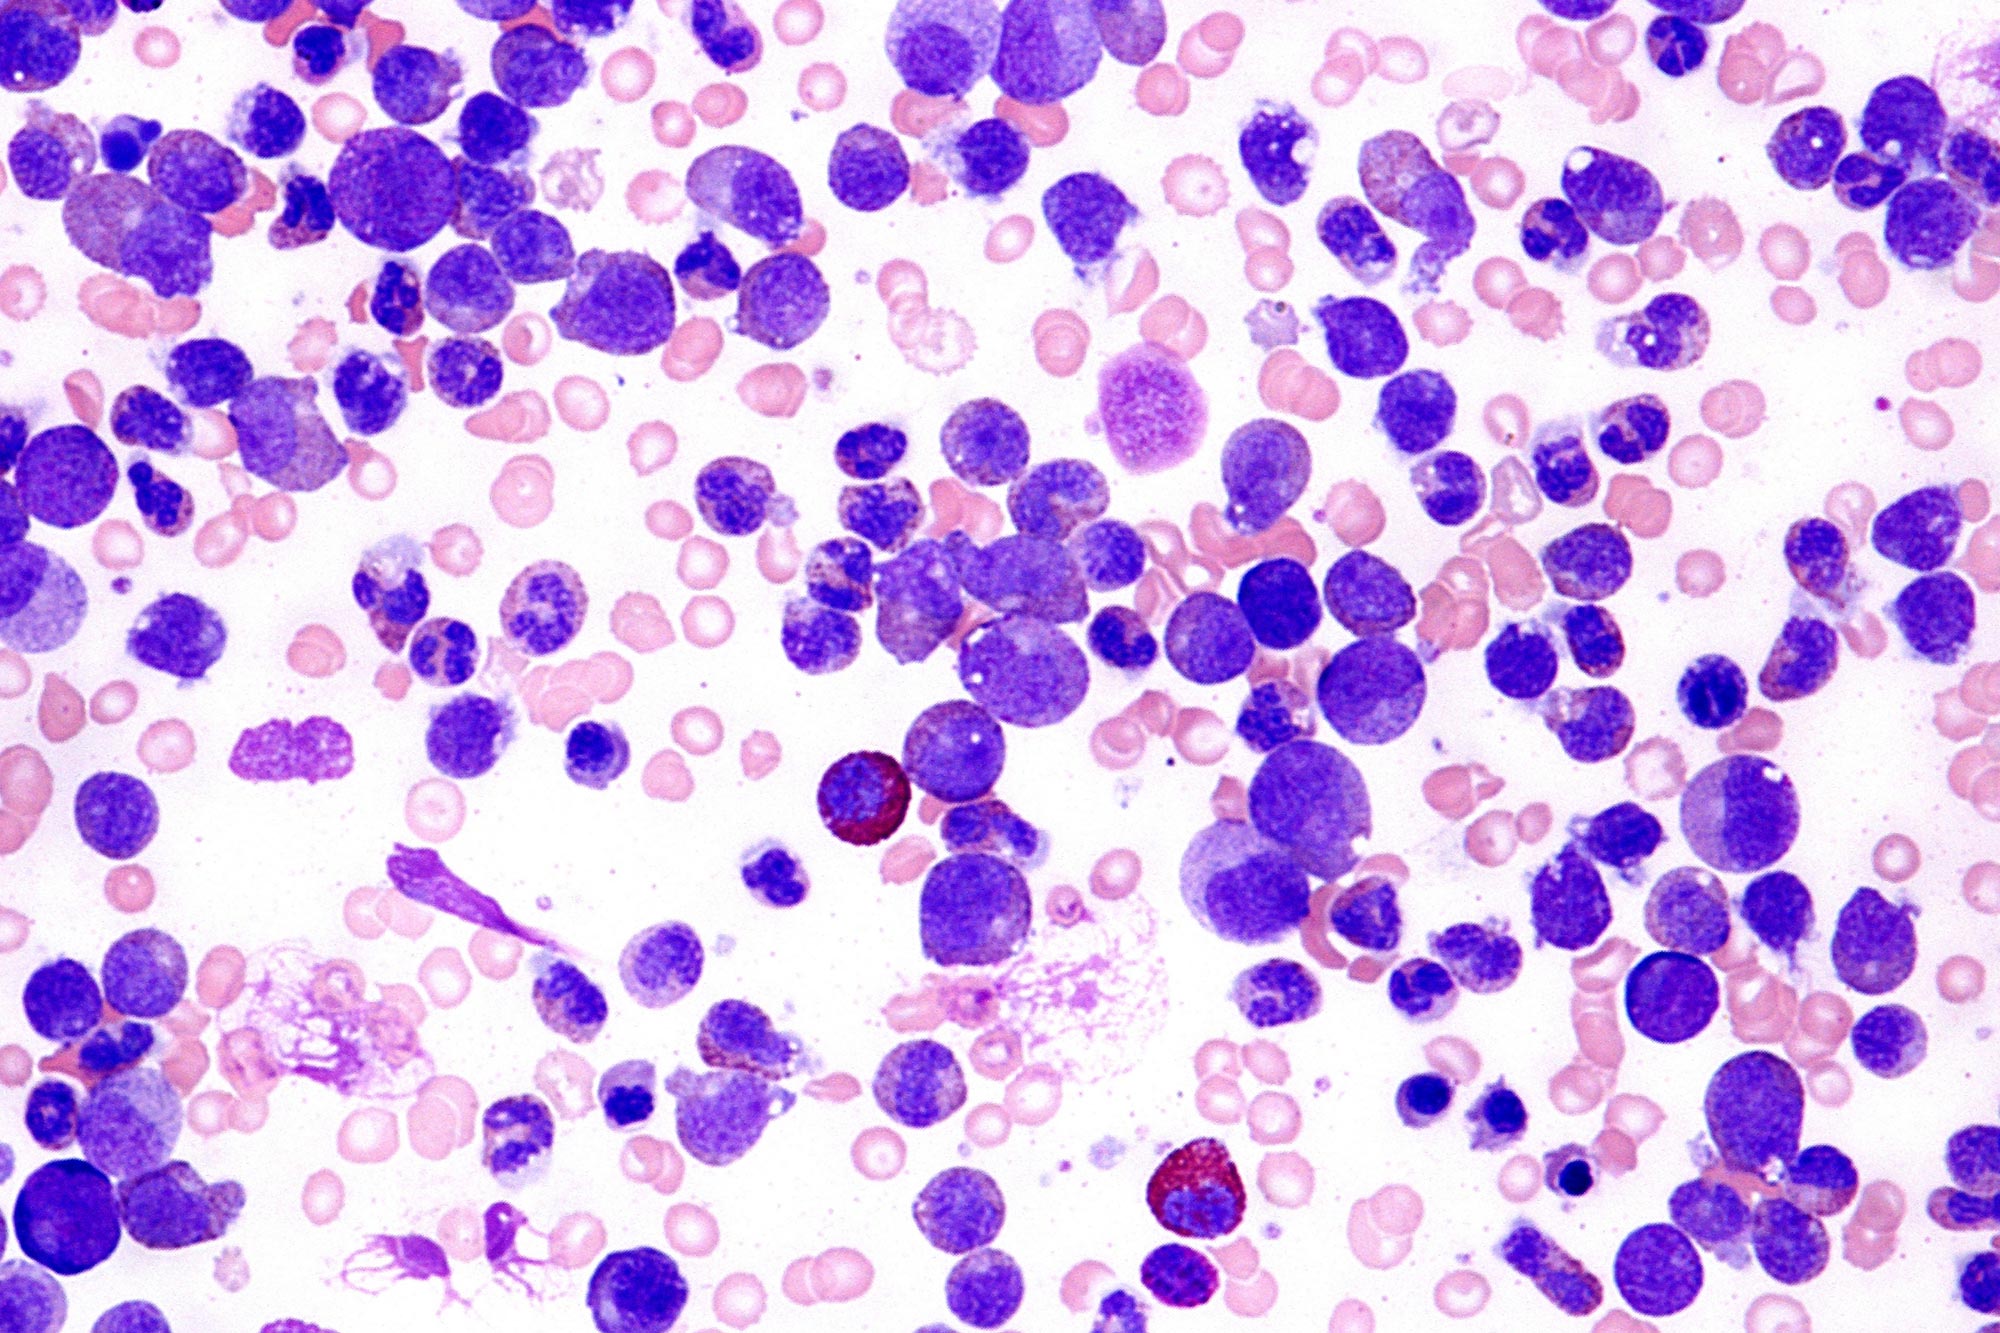 acute leukemia cells